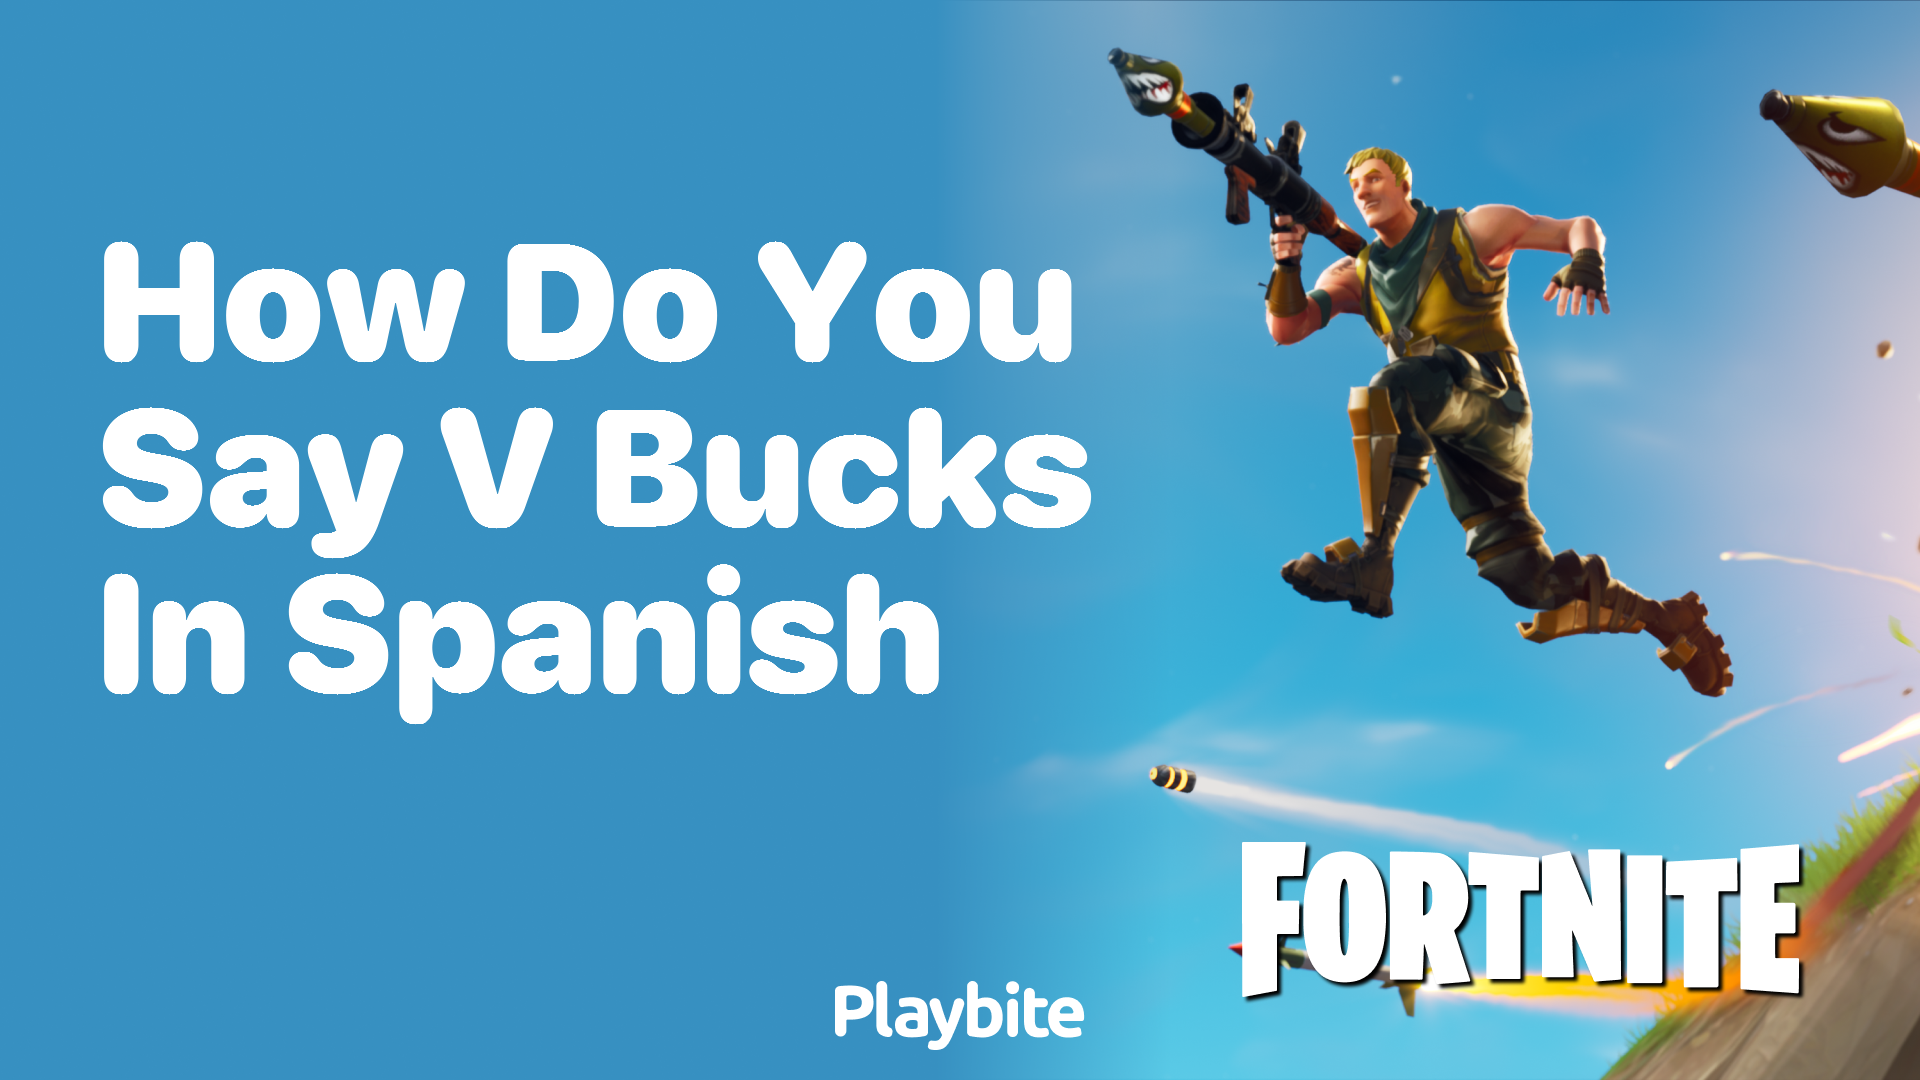 How Do You Say V-Bucks in Spanish?